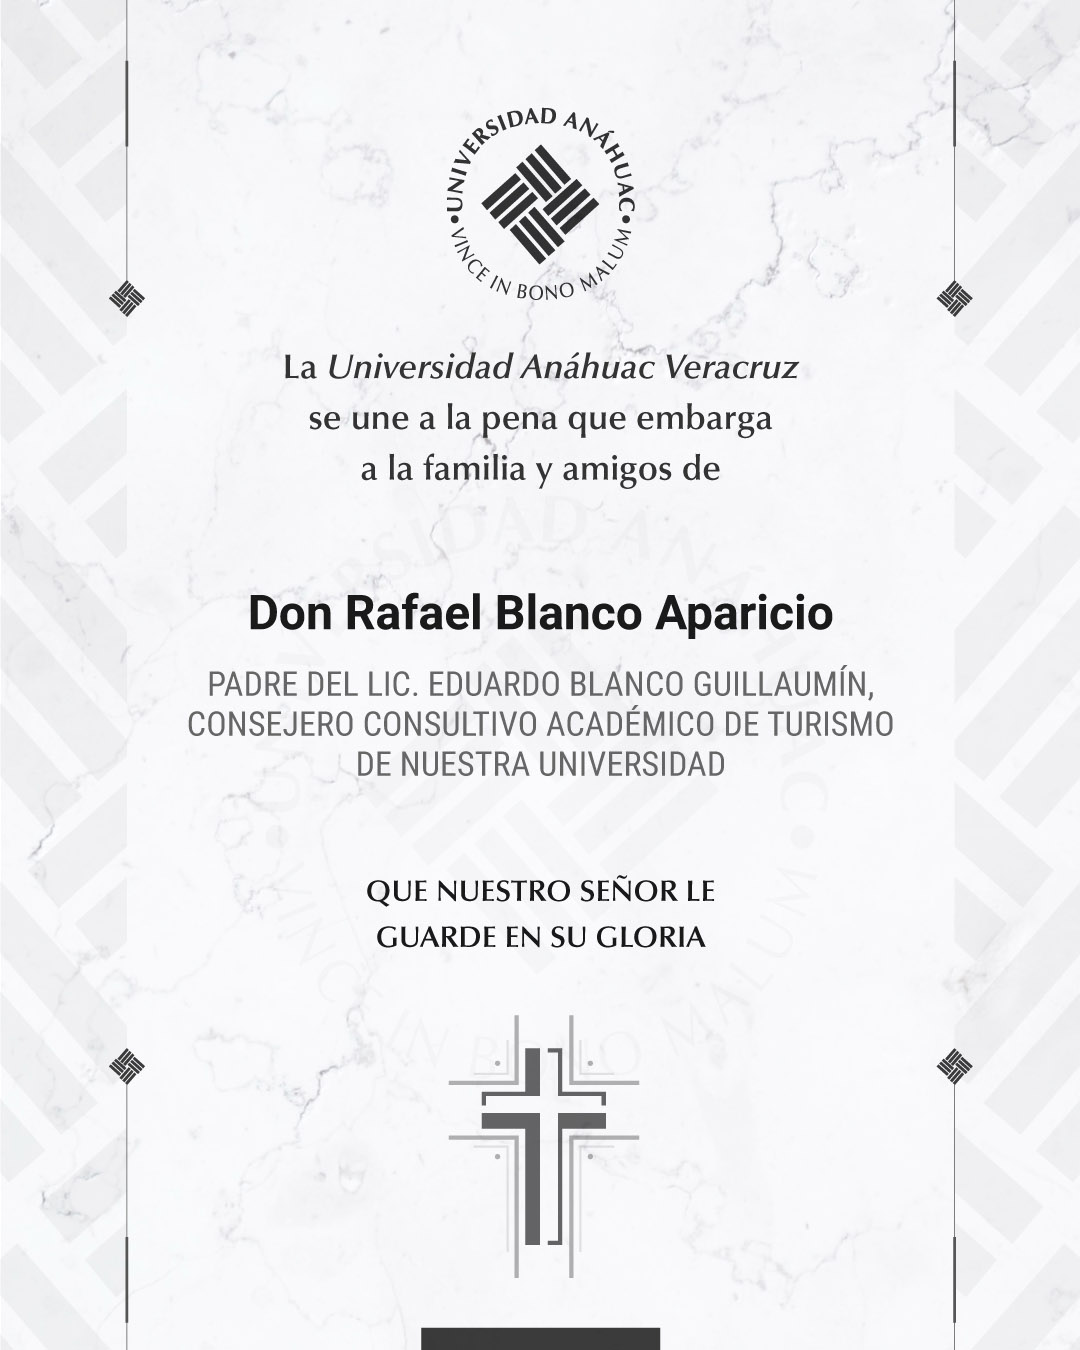 9 / 18 - Don Rafael Blanco Aparicio